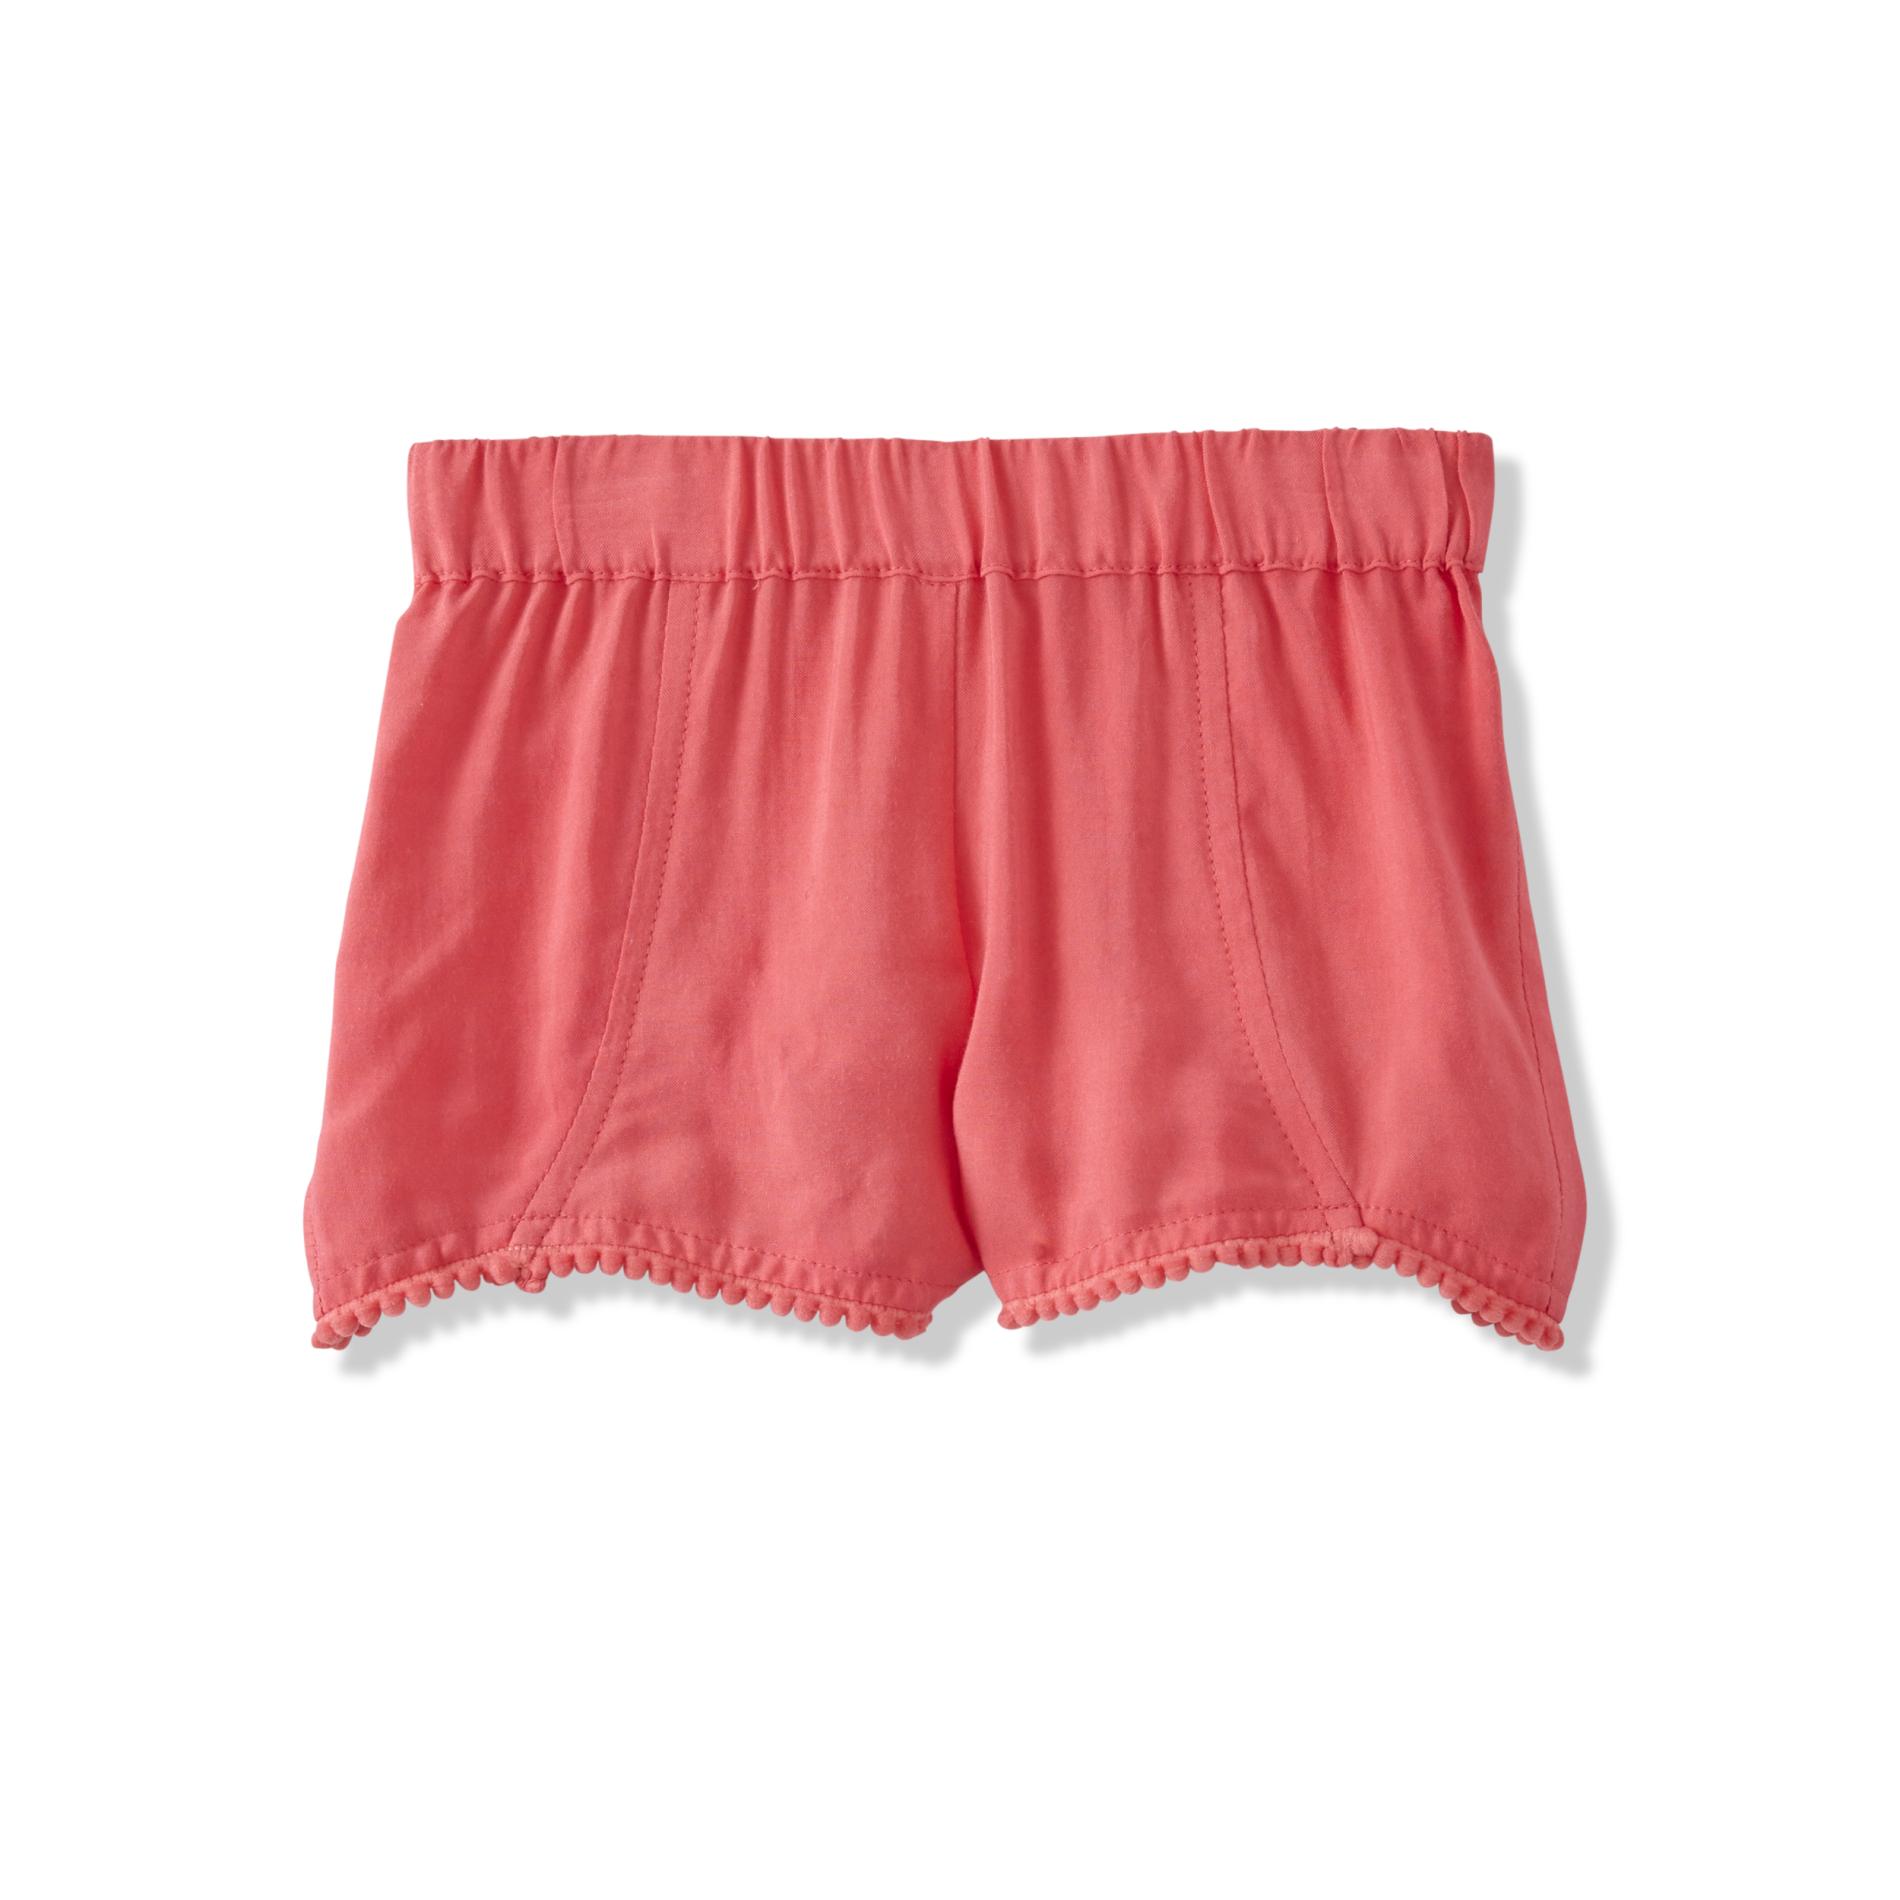 Toughskins Toddler Girls' Bobble Shorts